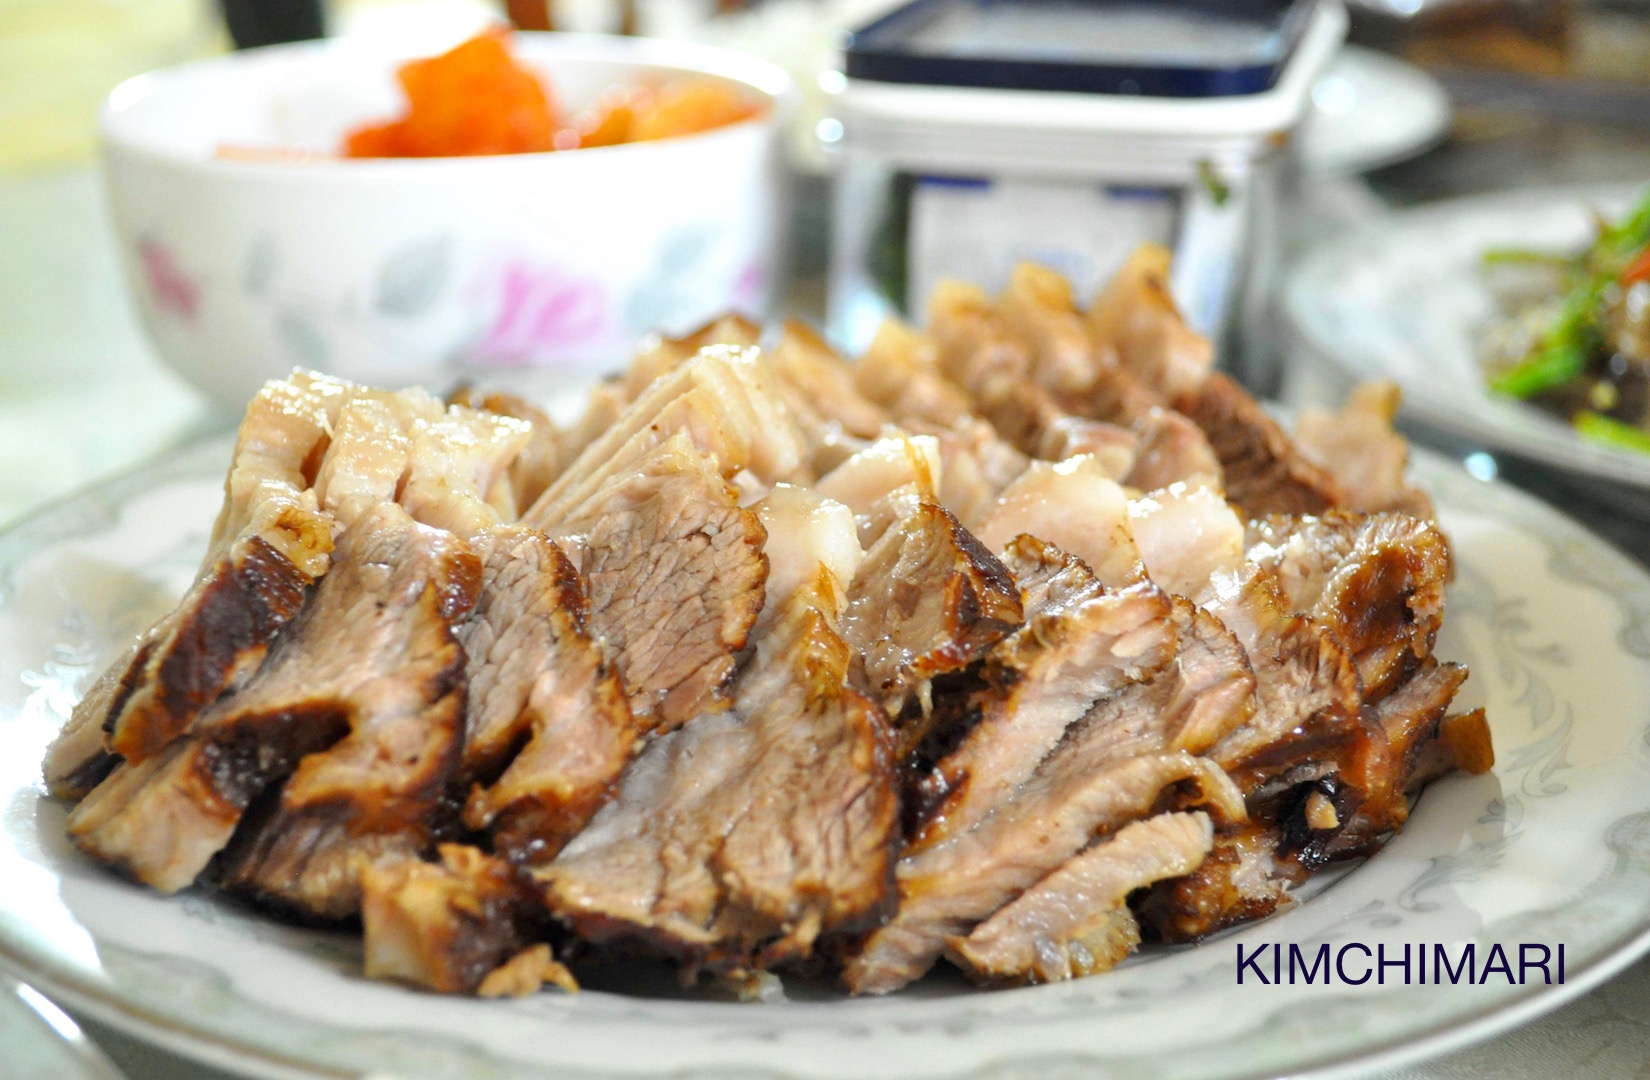 EASY Oven Roasted Korean Pork Belly - Kimchimari